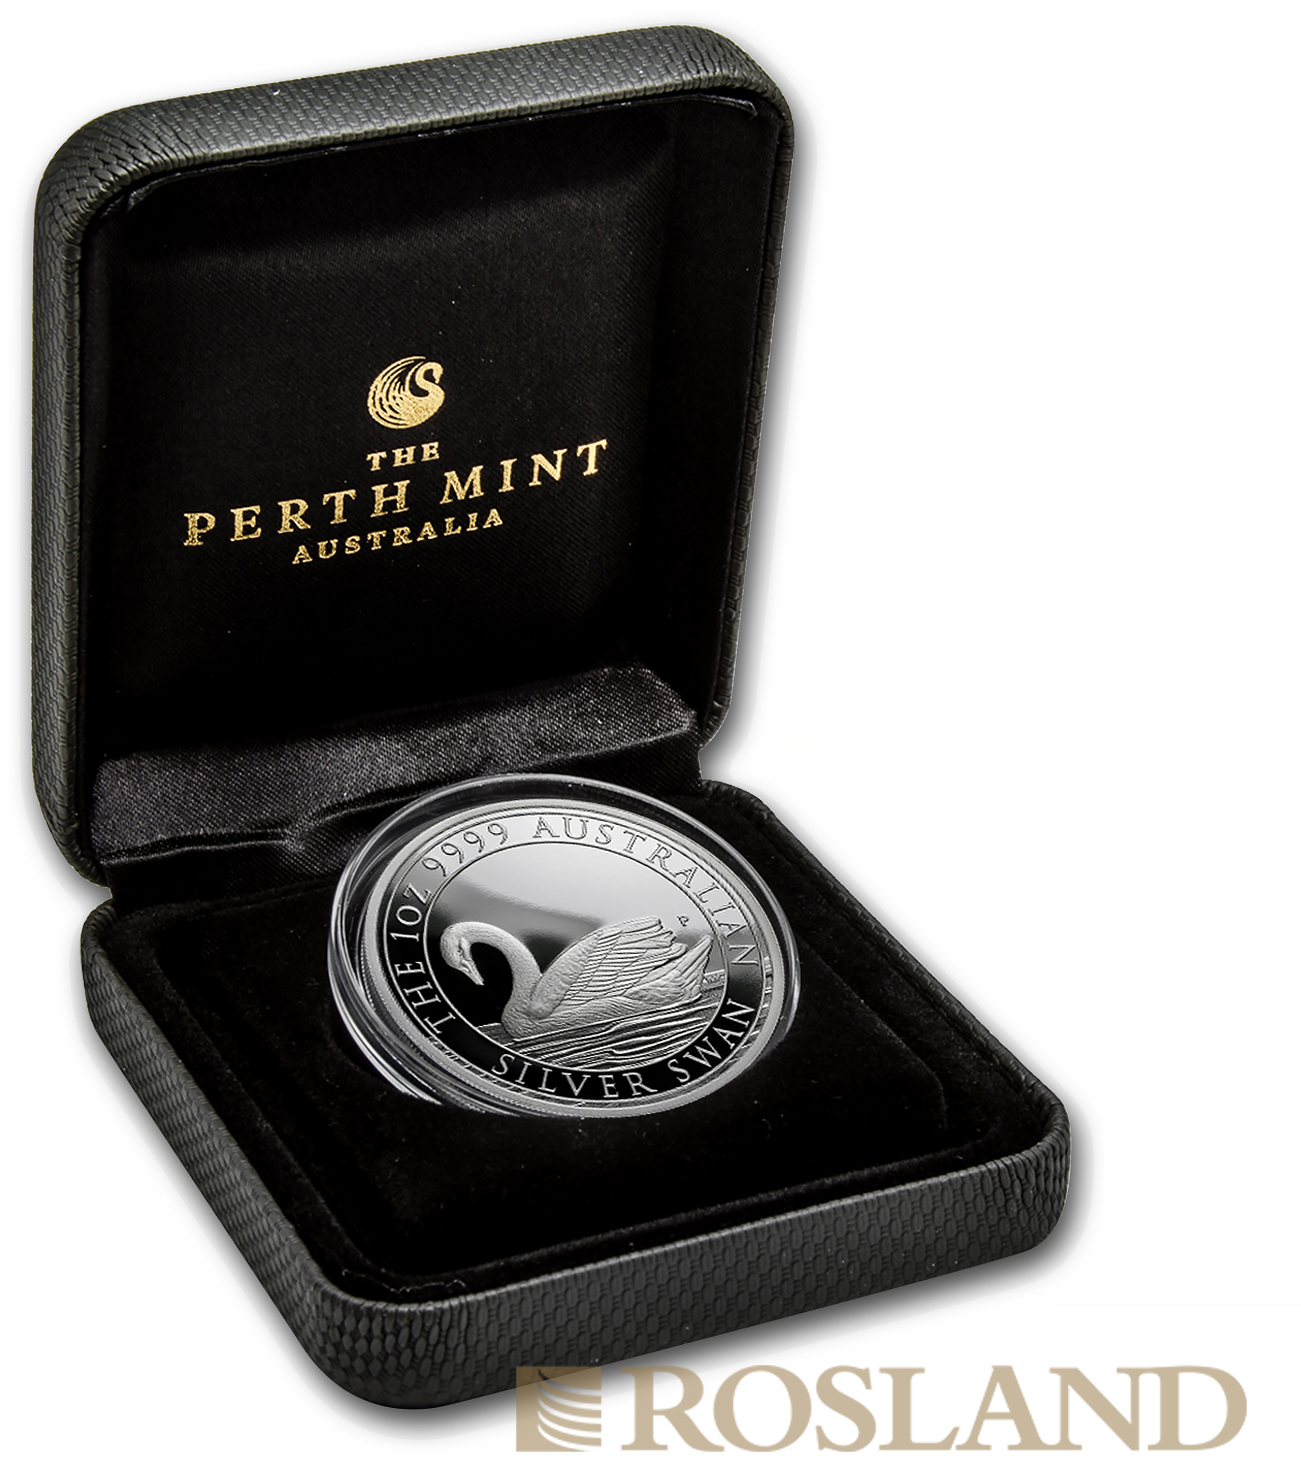 1 Unze Silbermünze Australien Schwan 2017 PP (Box, Zertifikat)